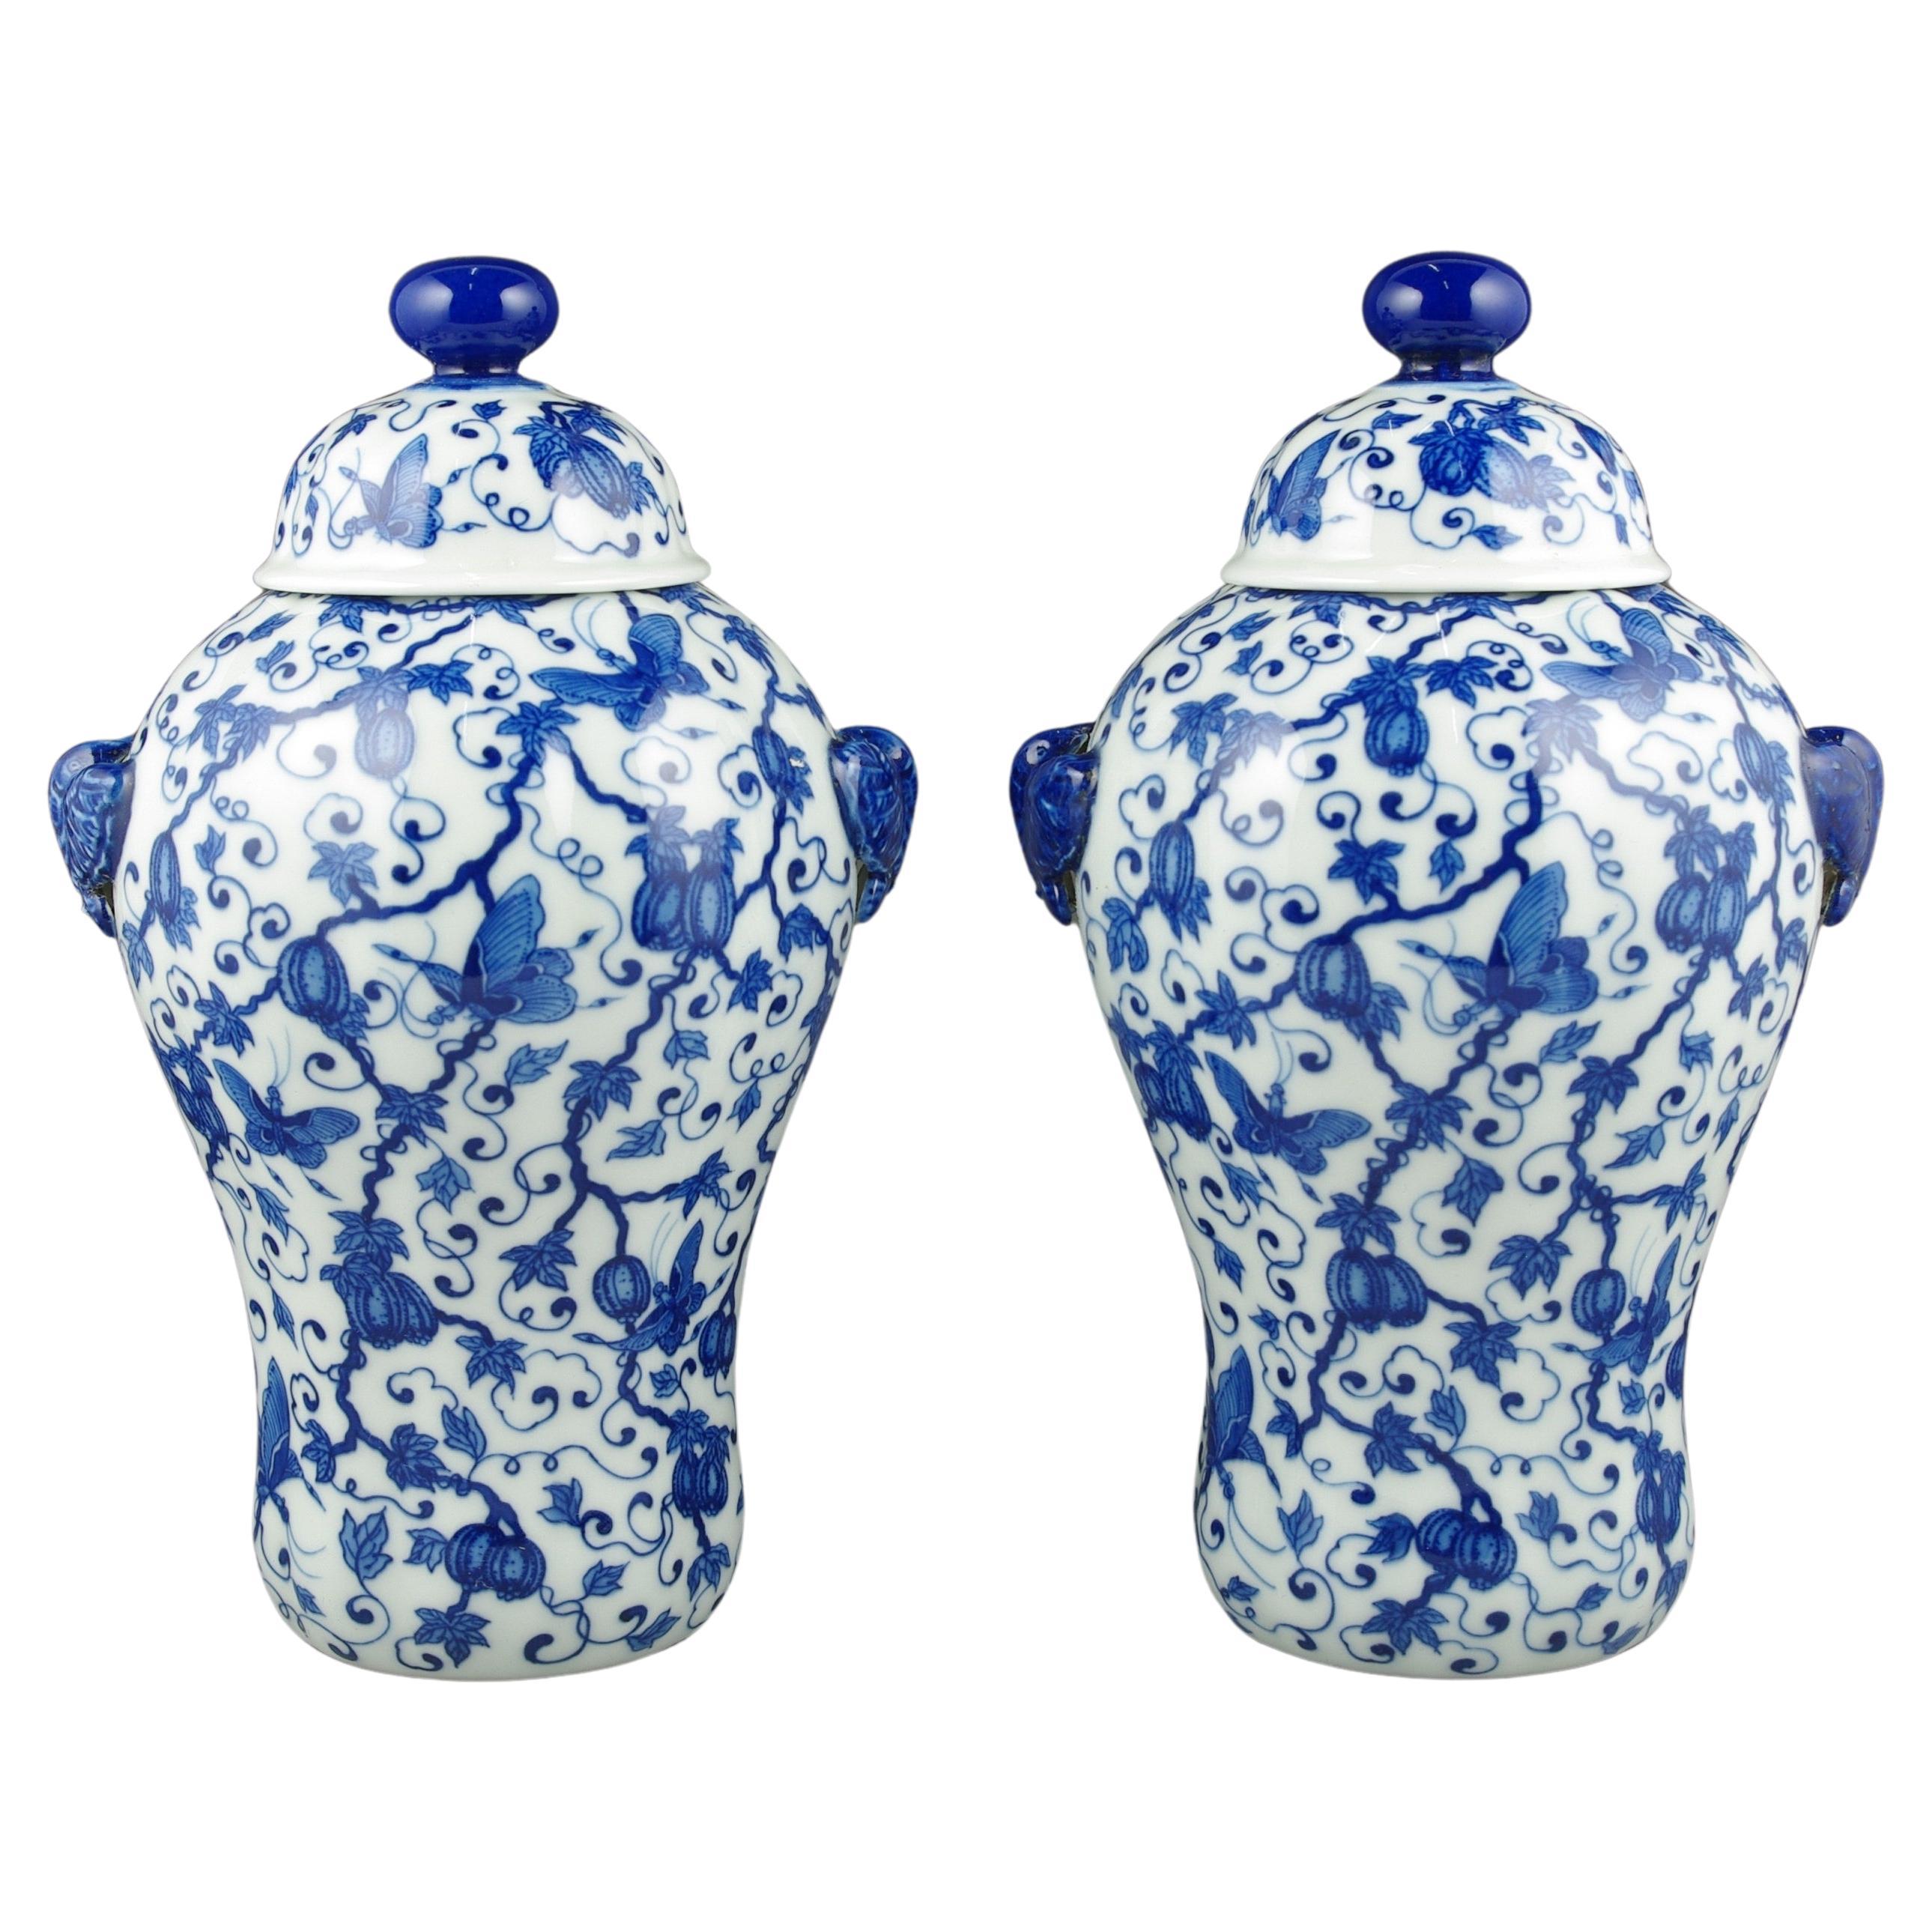 Paire de vases lobés recouverts de melons bleus et blancs sous glaçure de porcelaine chinoise, début 20e siècle